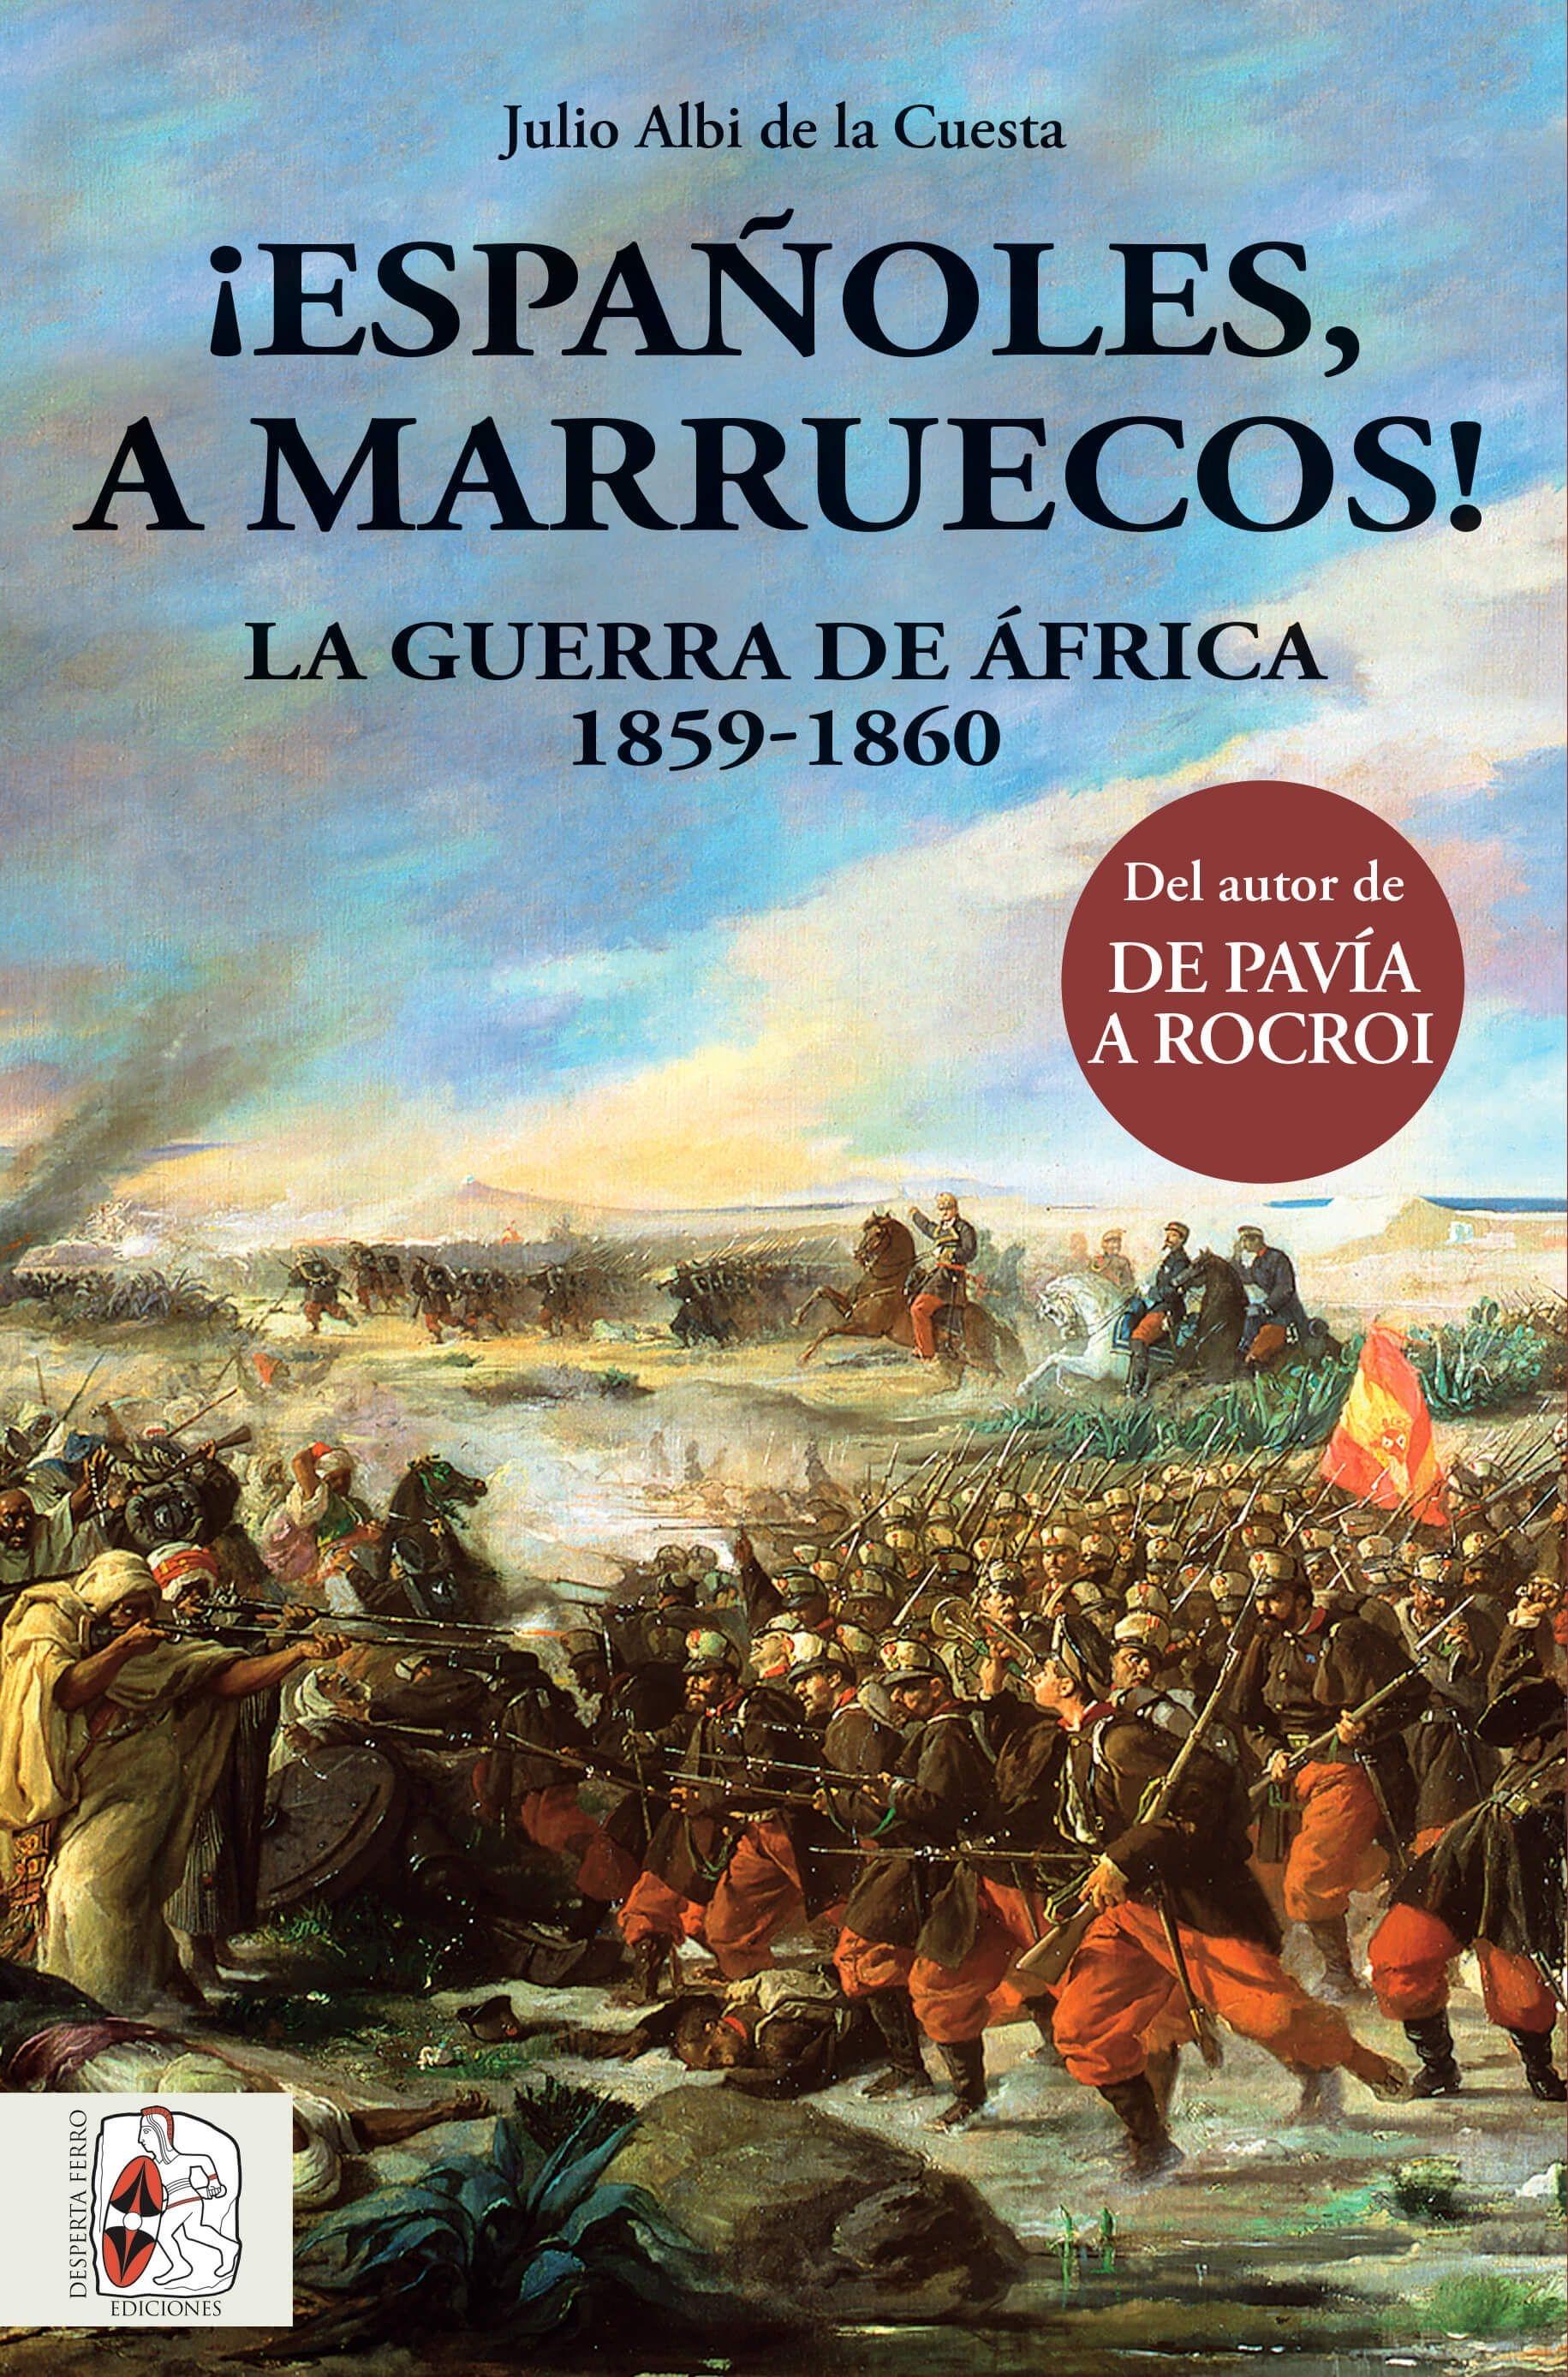 ¡Españoles, a Marruecos! "La Guerra de Africa 1859-1860"